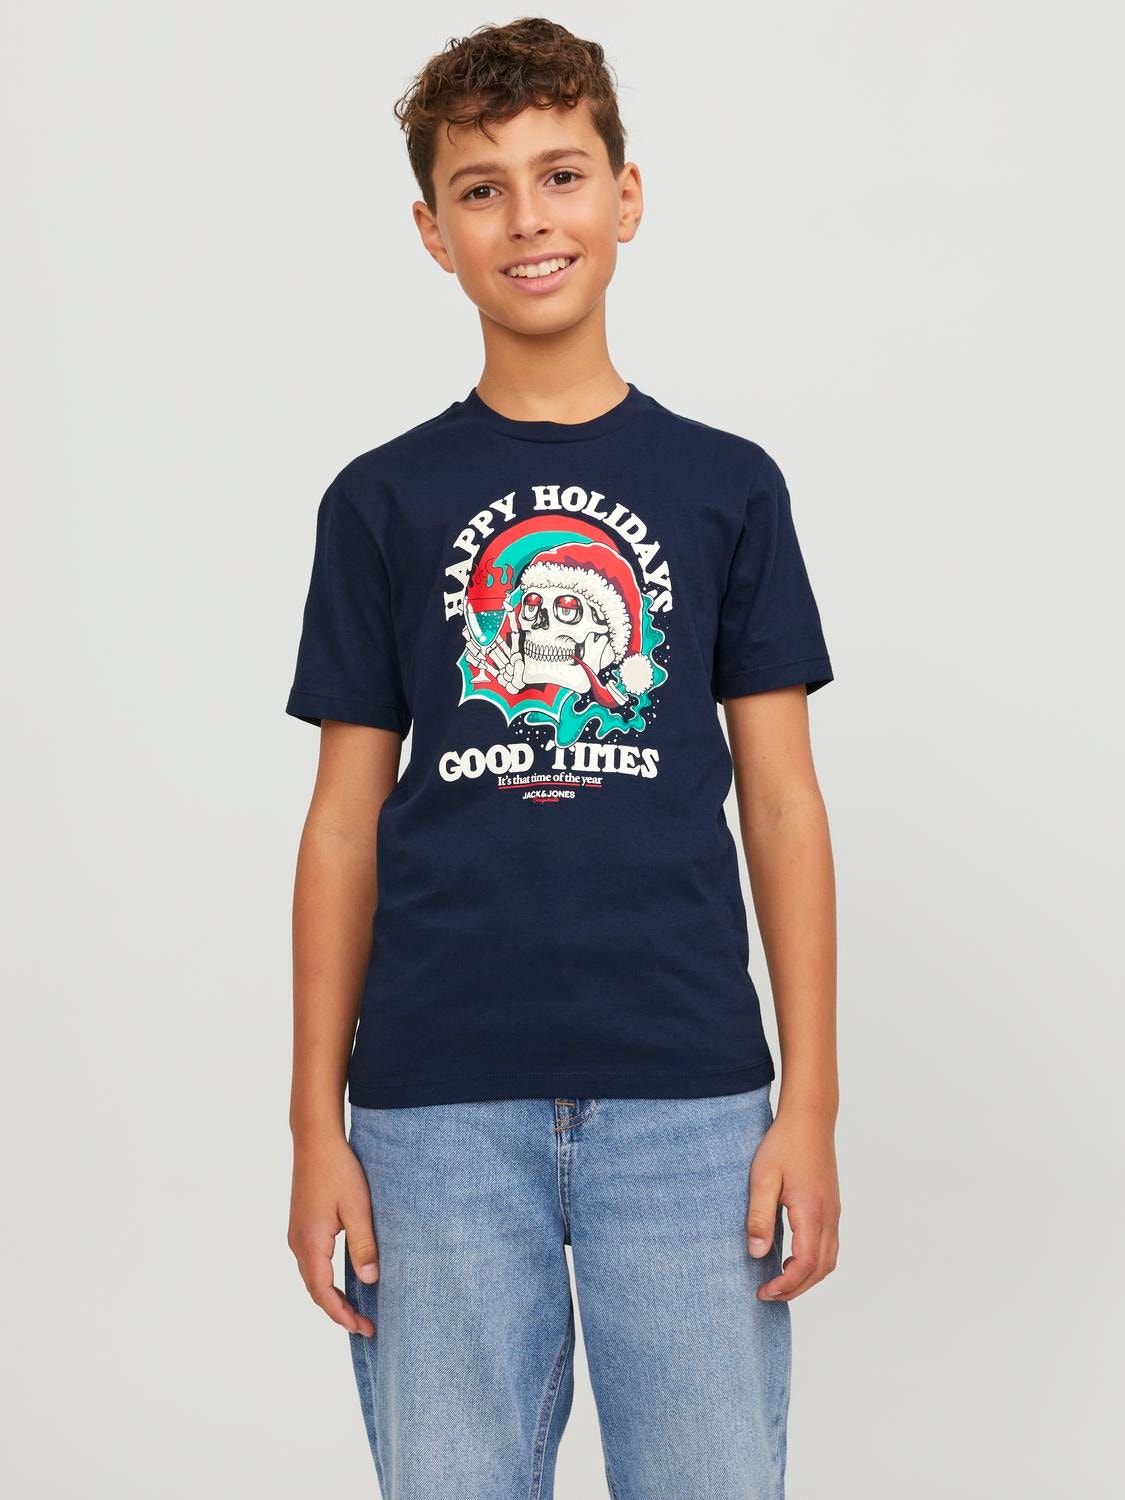 Jack & Jones X-mas T-shirt Voor jongens -Navy Blazer - 12247645